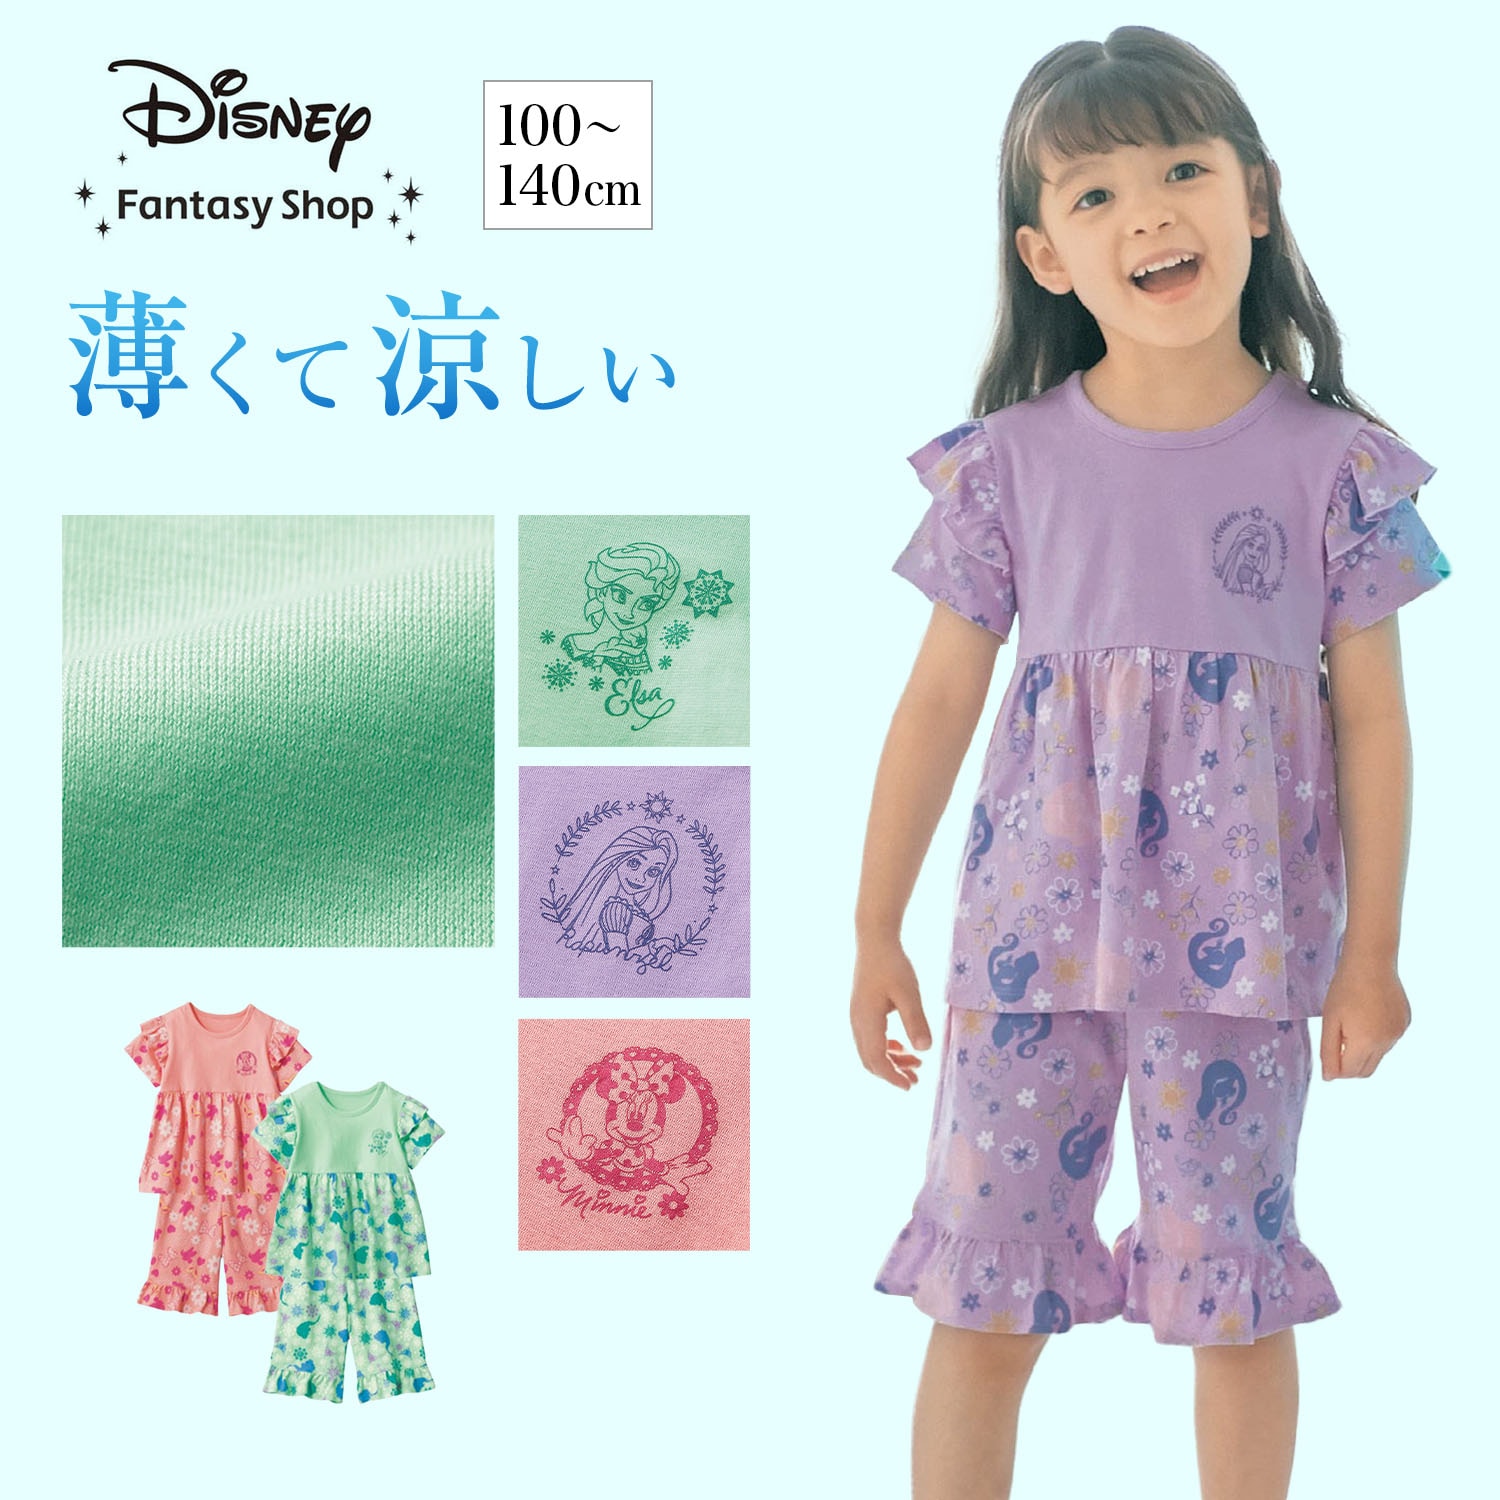 【ディズニー/Disney】薄くて涼しい切り替えフリルパジャマ (選べるキャラクター)